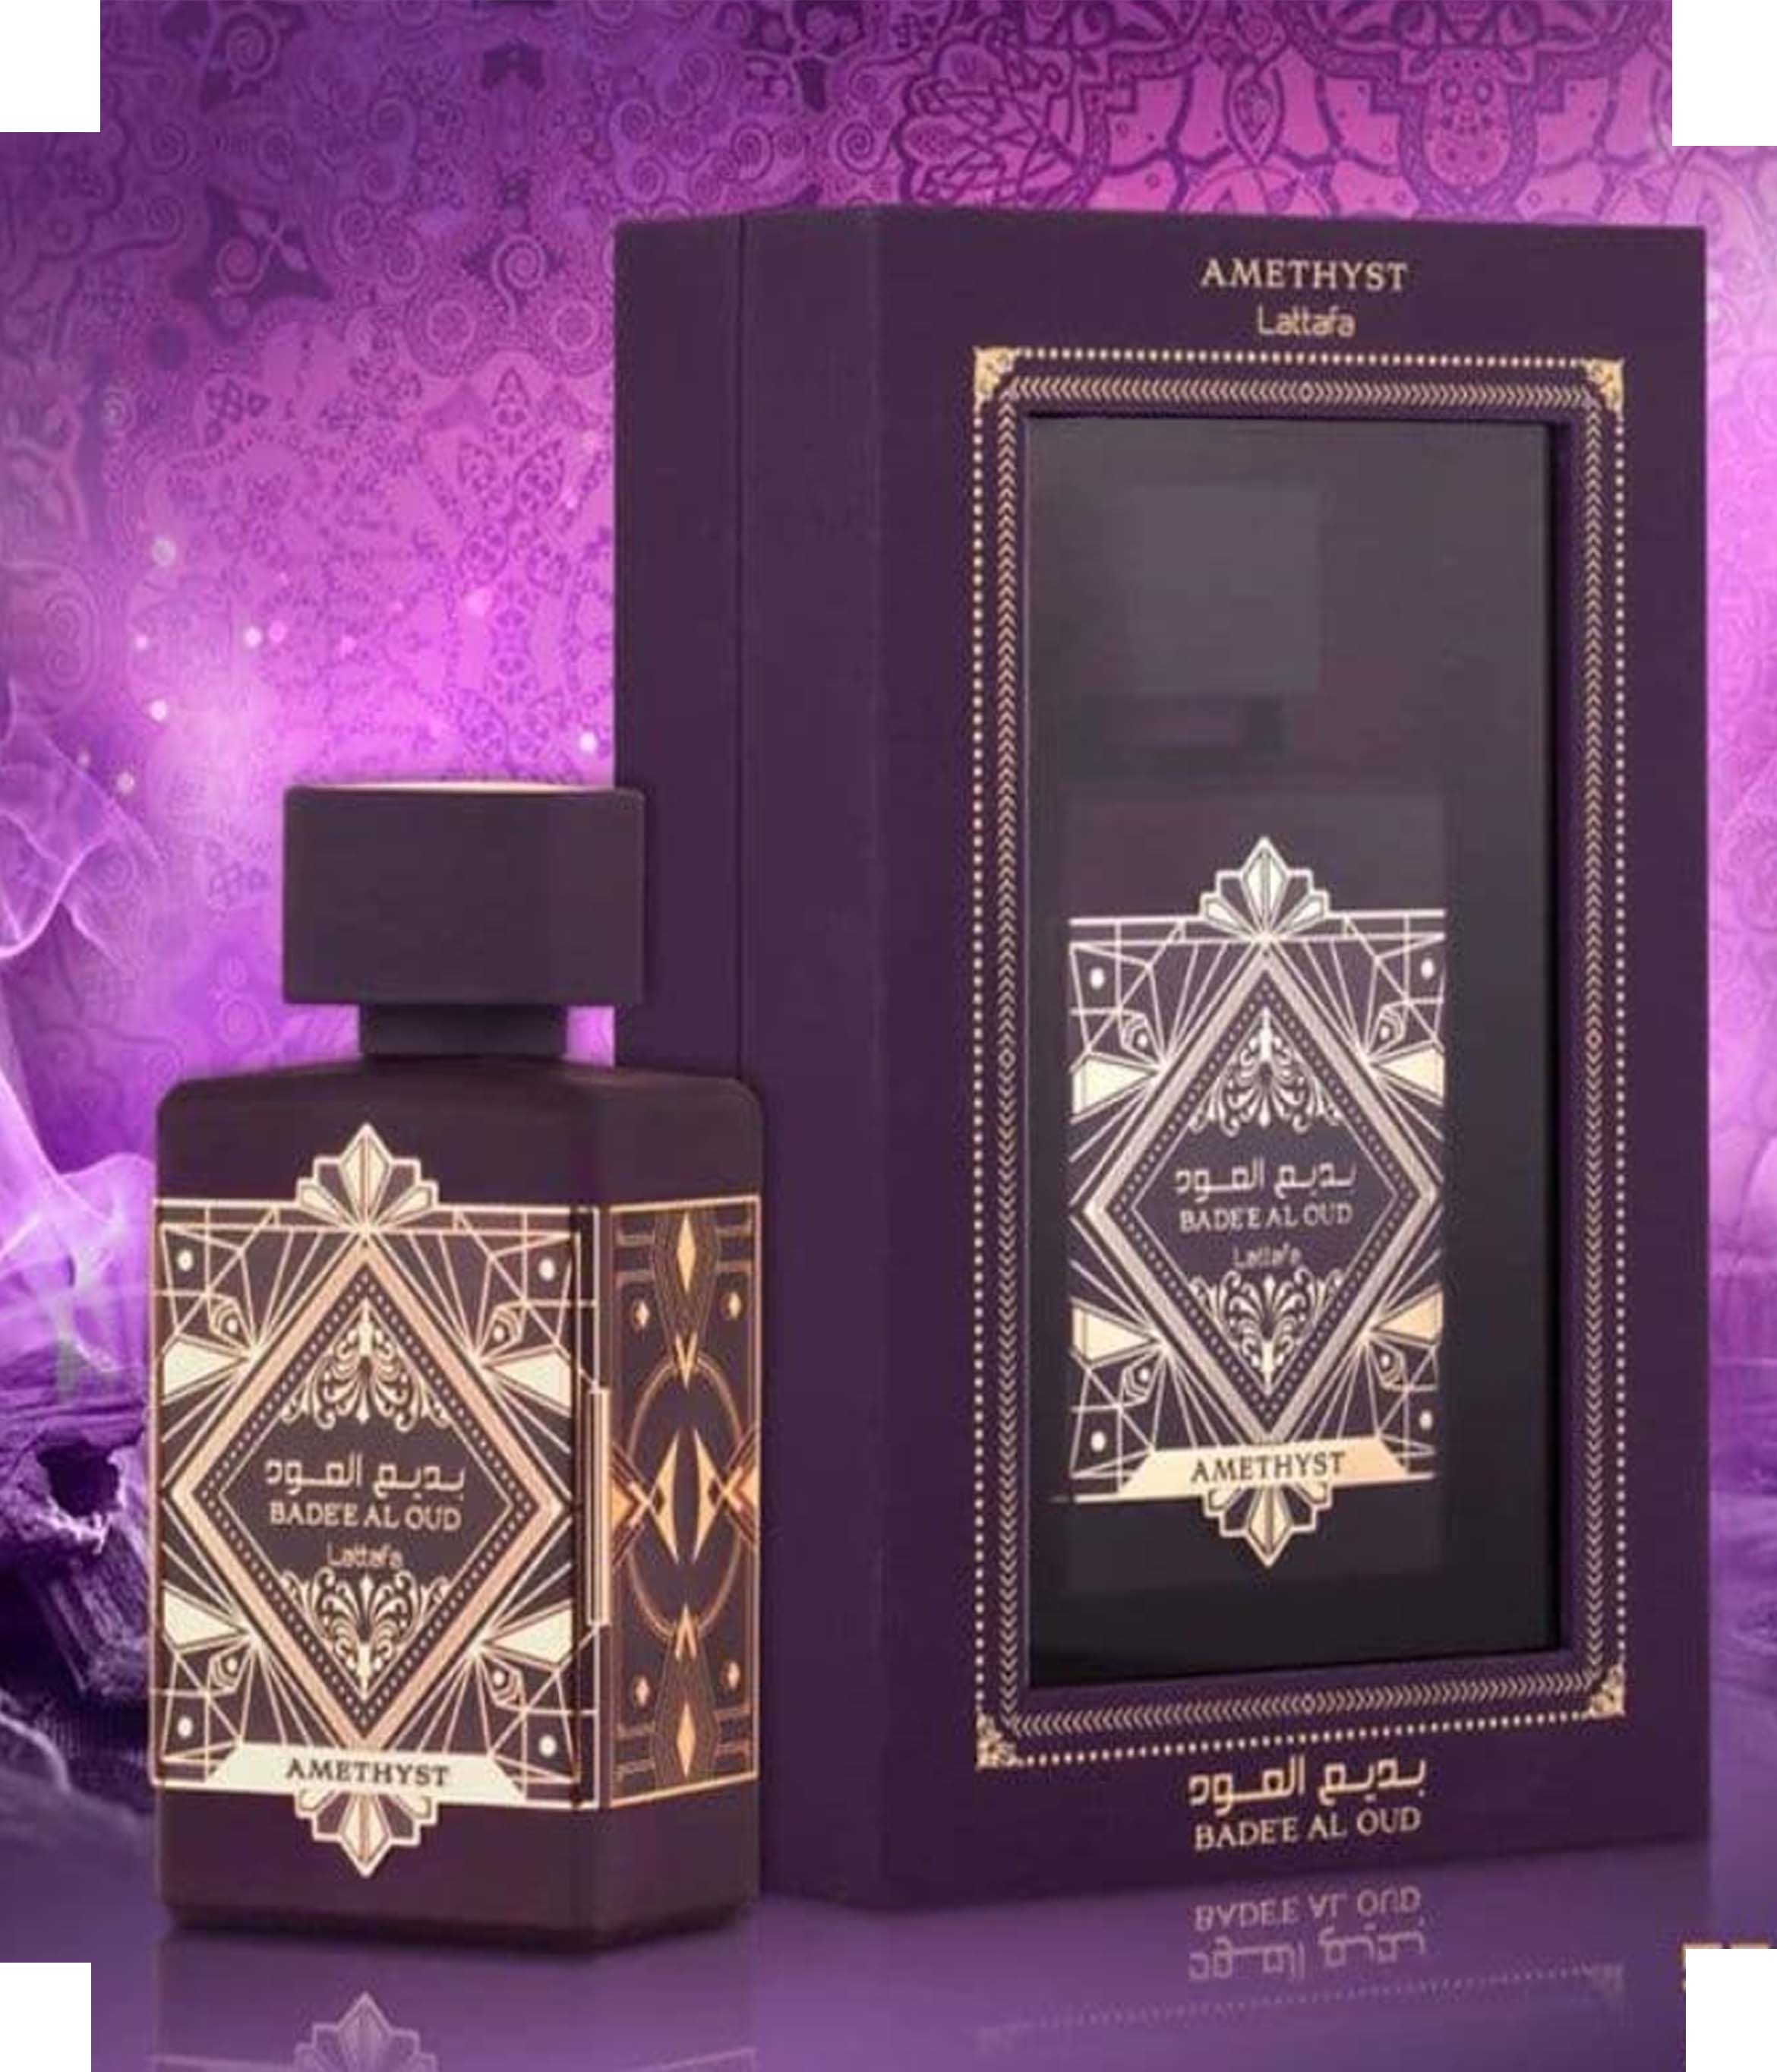 Lattafa Bade’e Al Oud Amethyst Perfume